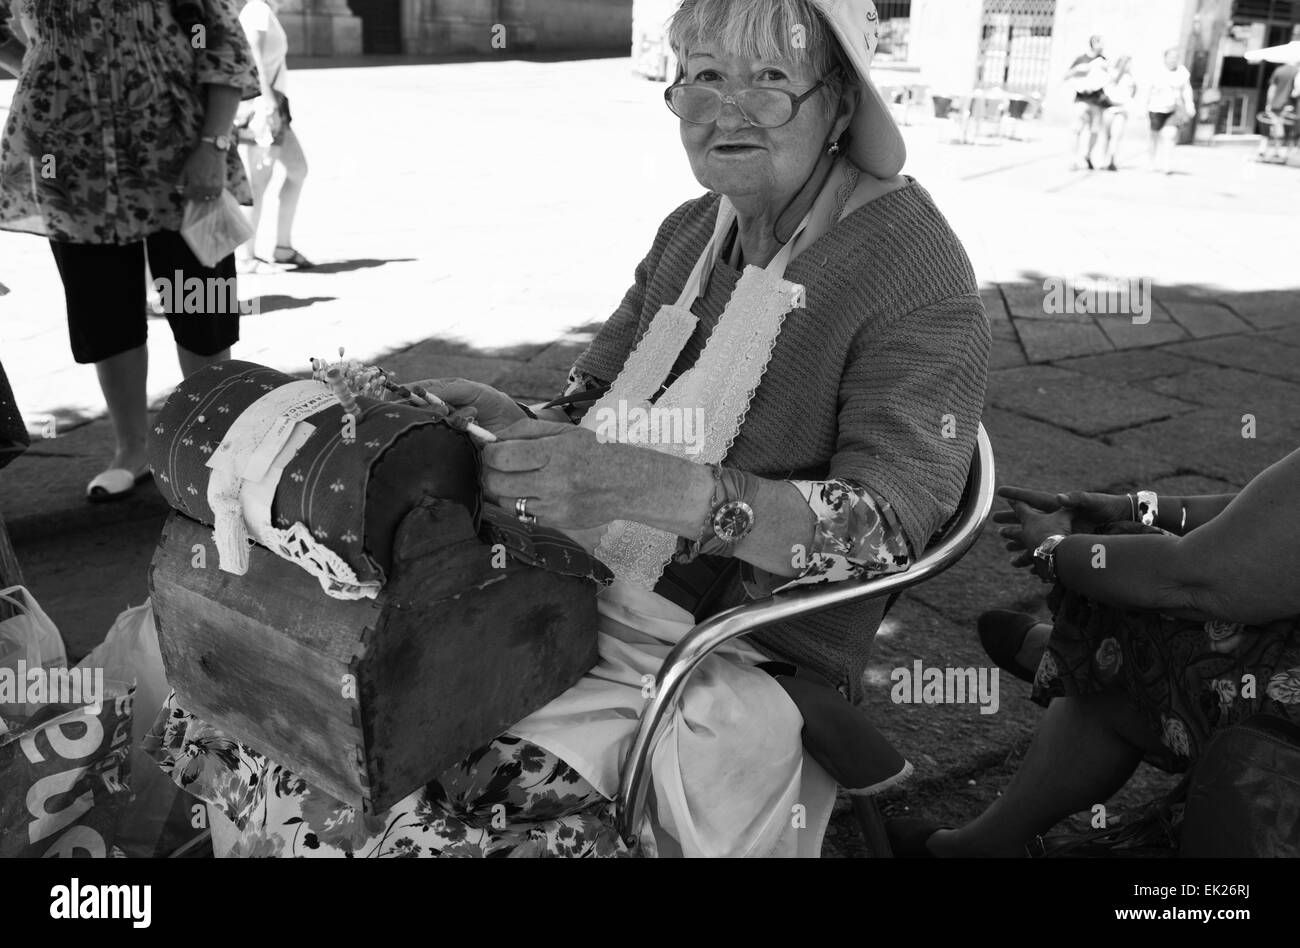 SALAMANCA, España, 3 de agosto: mujer anciano desconocido demostrando el intrincado arte de hacer encajes de almohadas o el encaje de bolillos, sobre AU Foto de stock